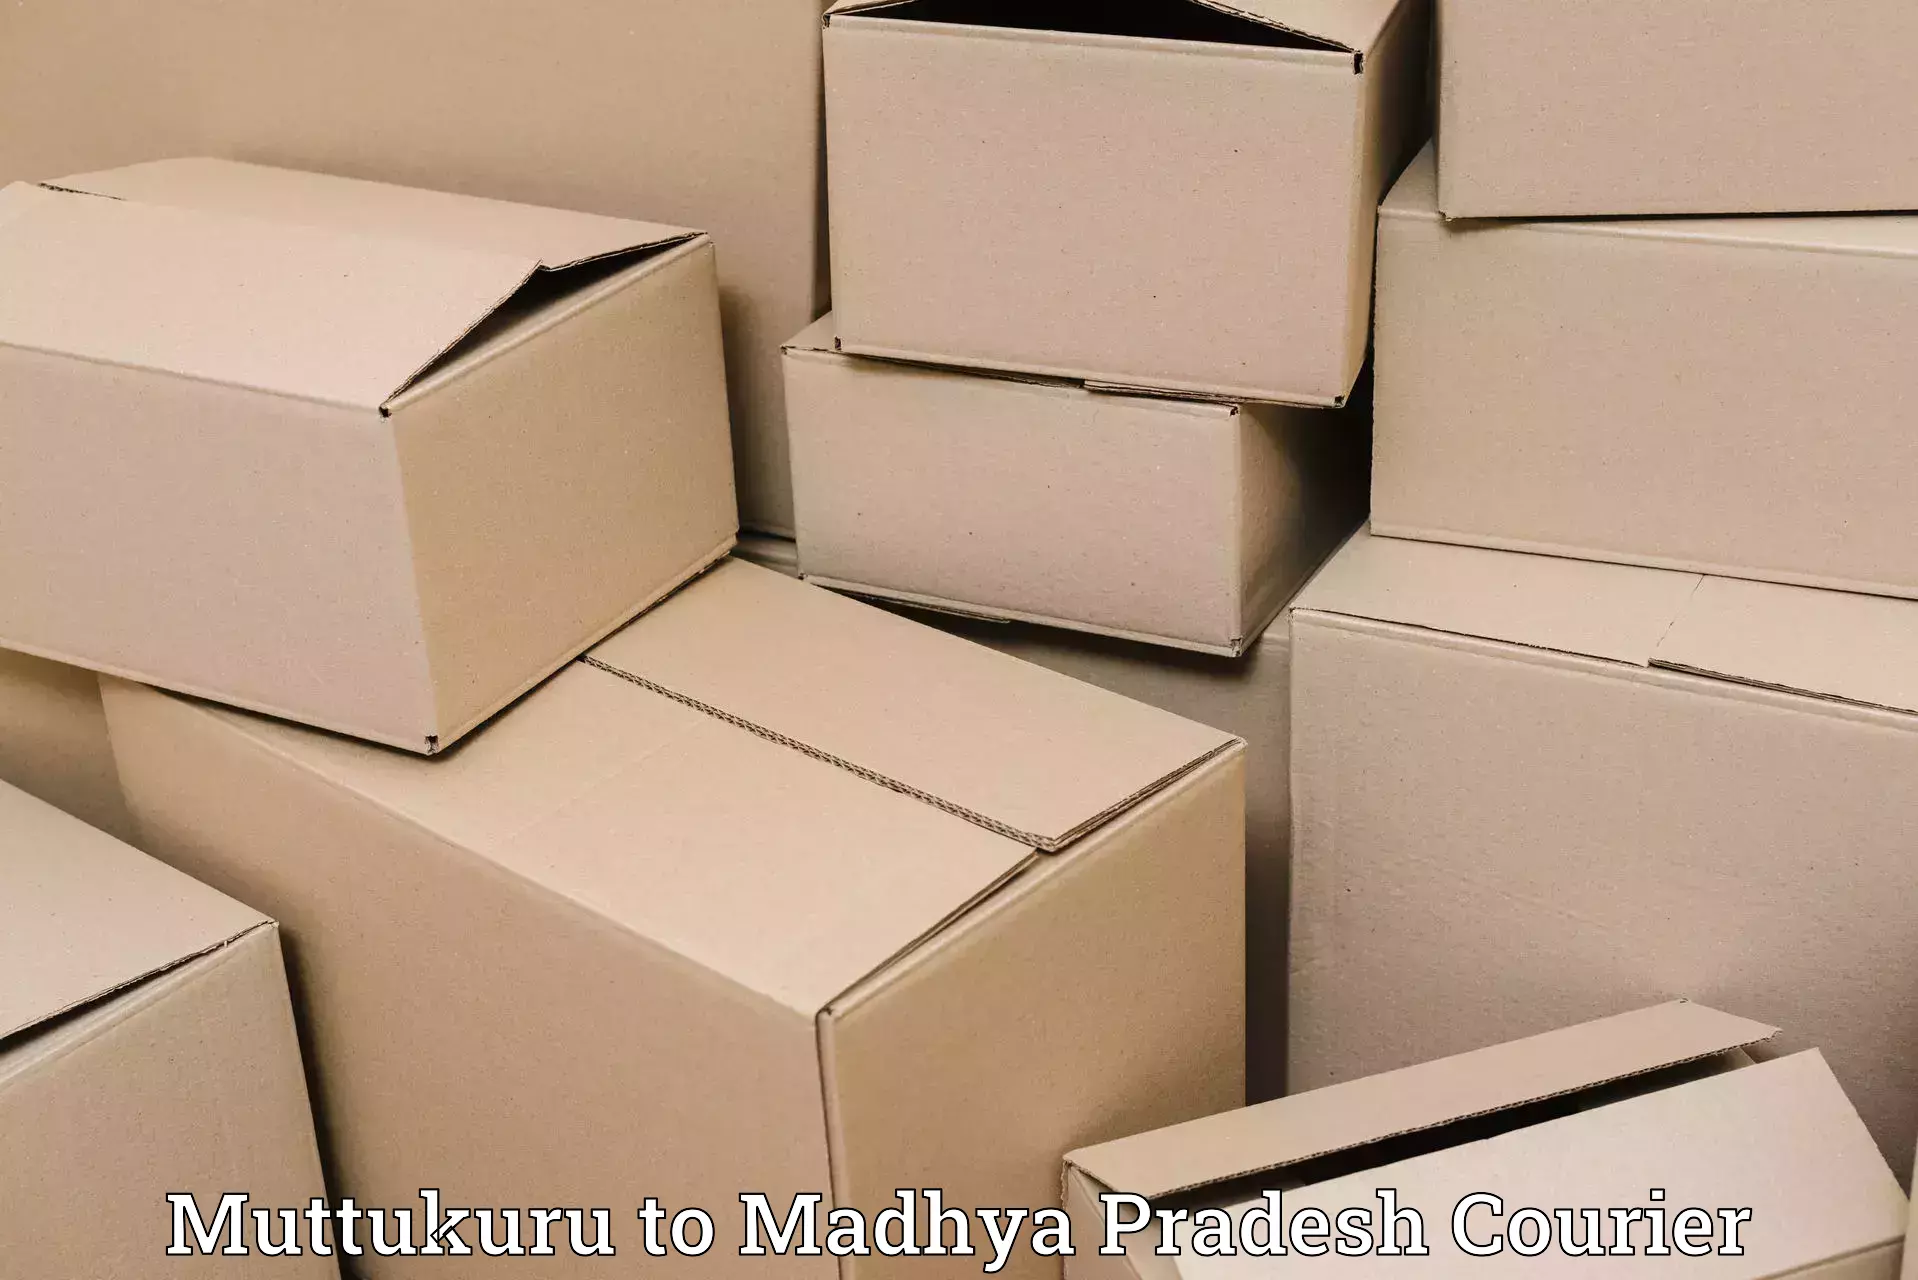 Cross-border shipping Muttukuru to Jatara